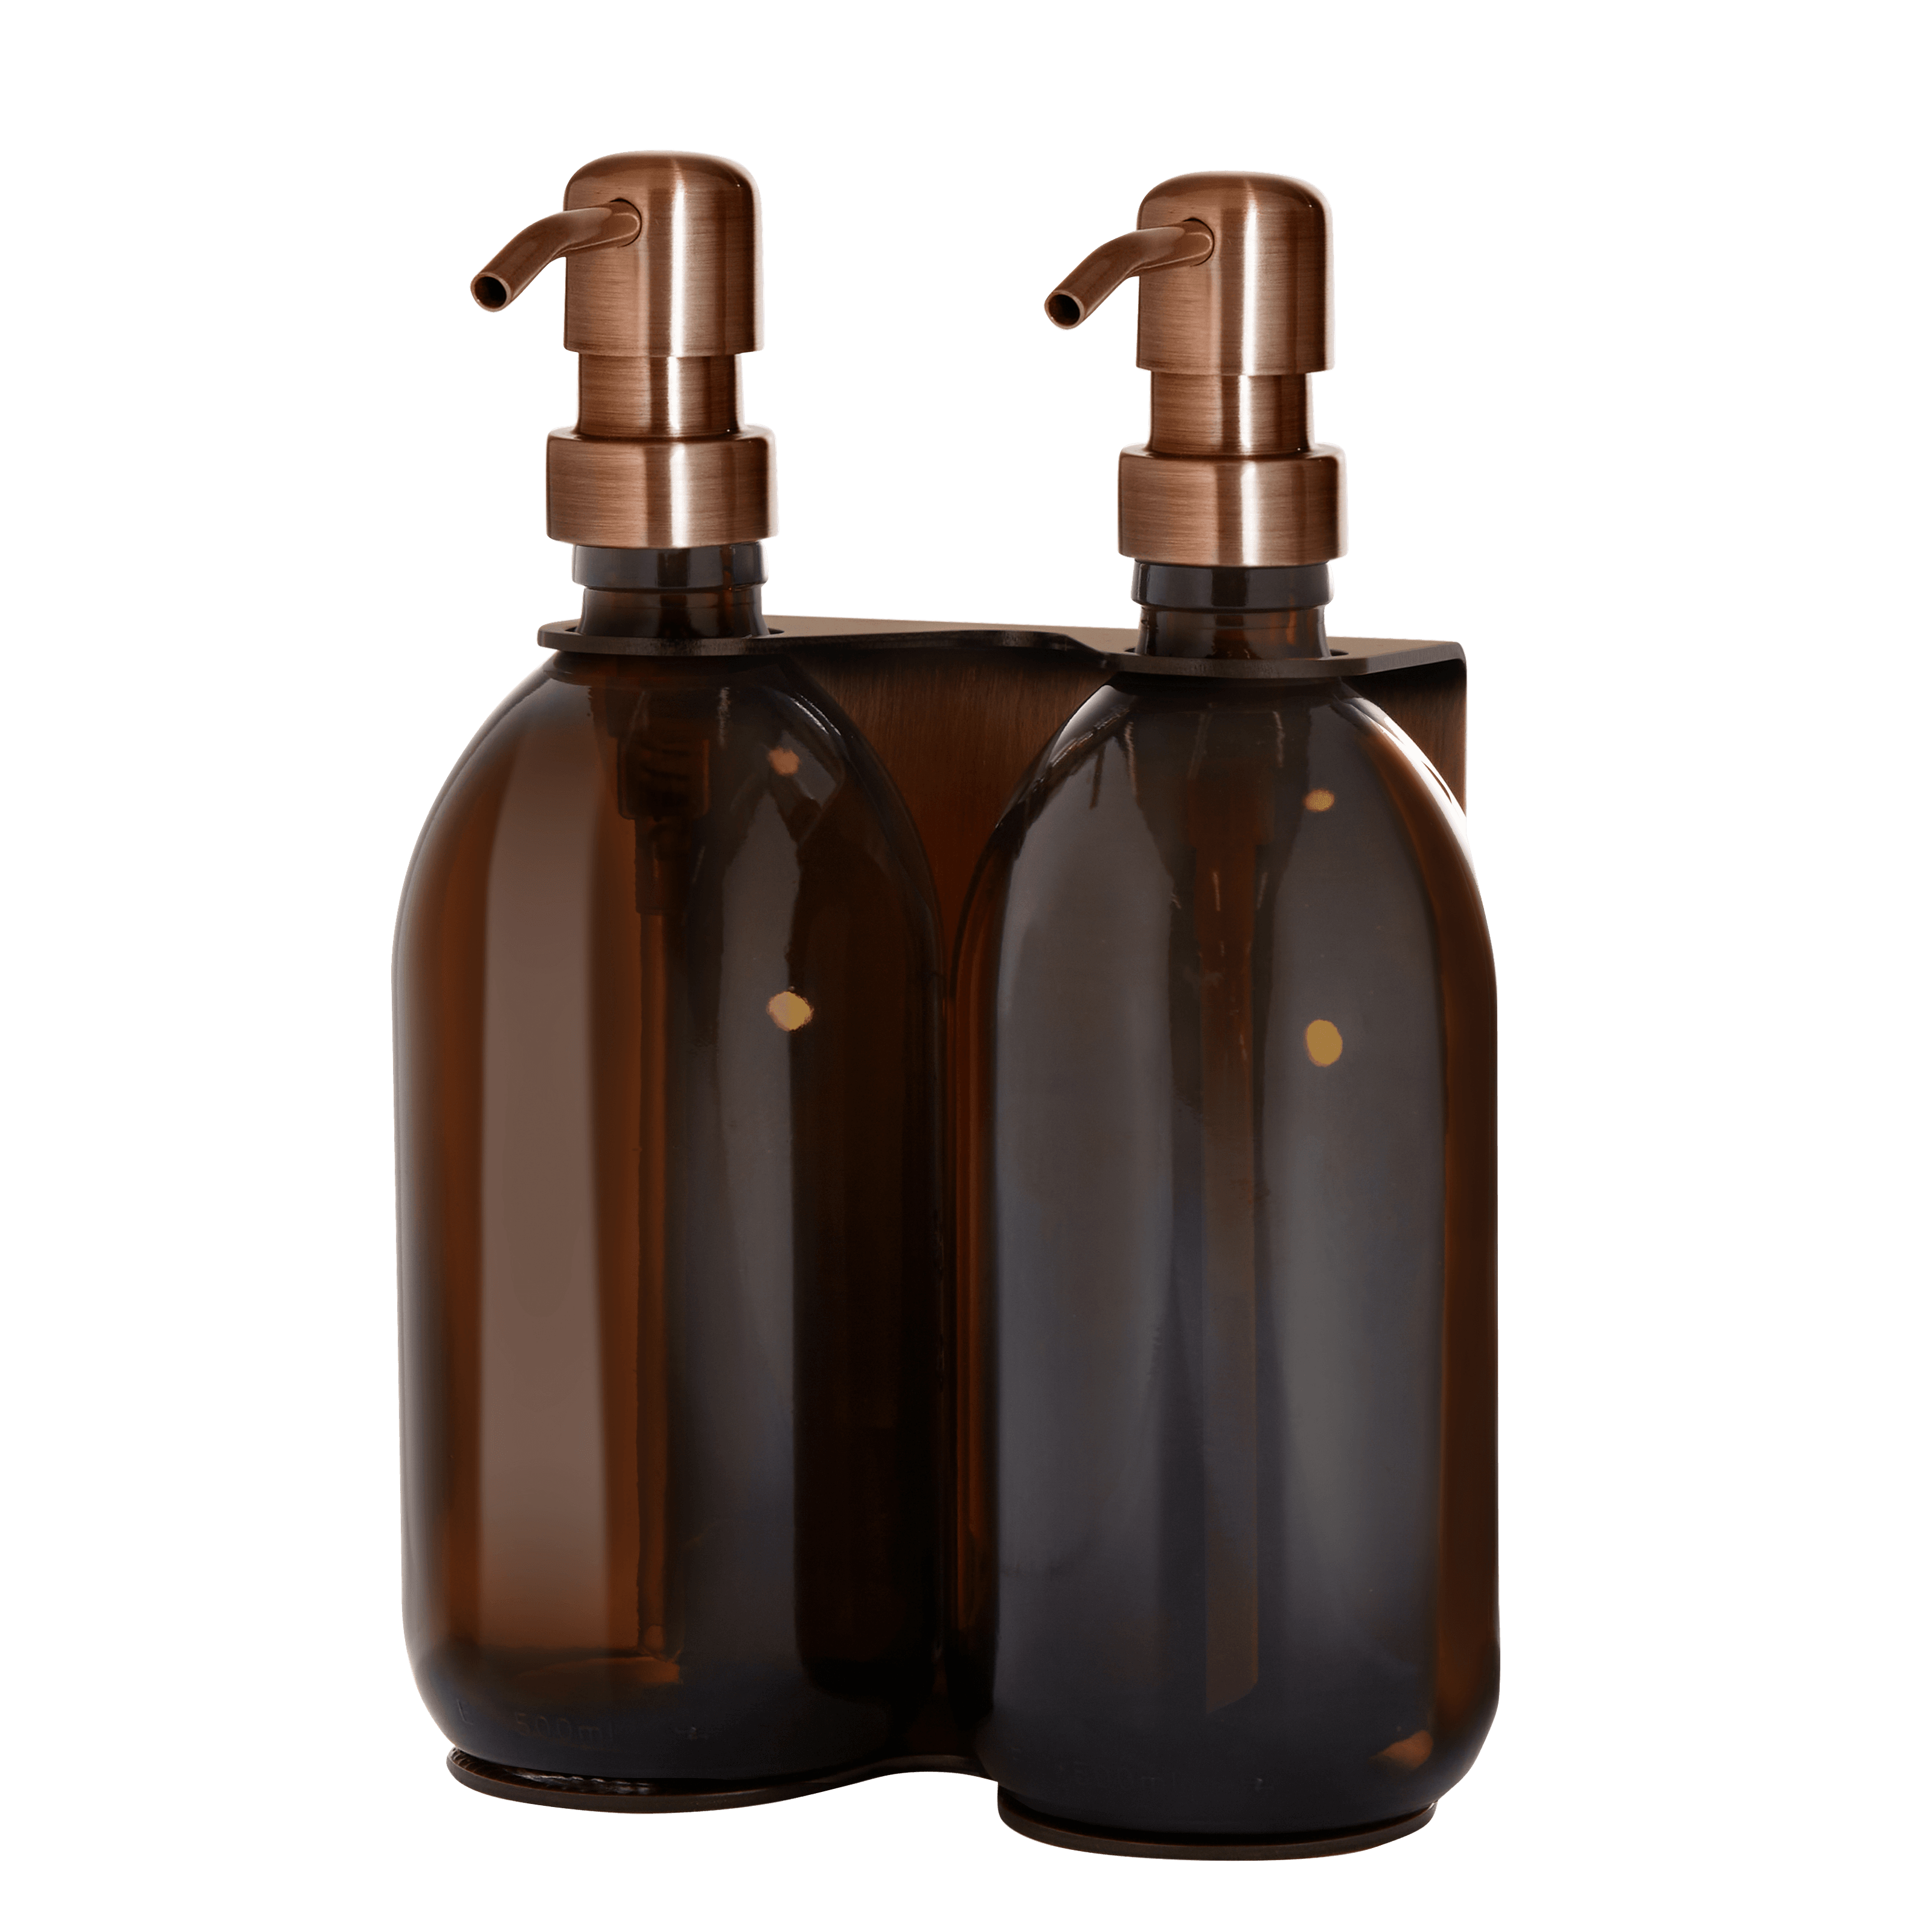 Kupferner Wandseifenspender doppelt mit 250ml bernsteinfarbene Flaschen und Kupferpumpe